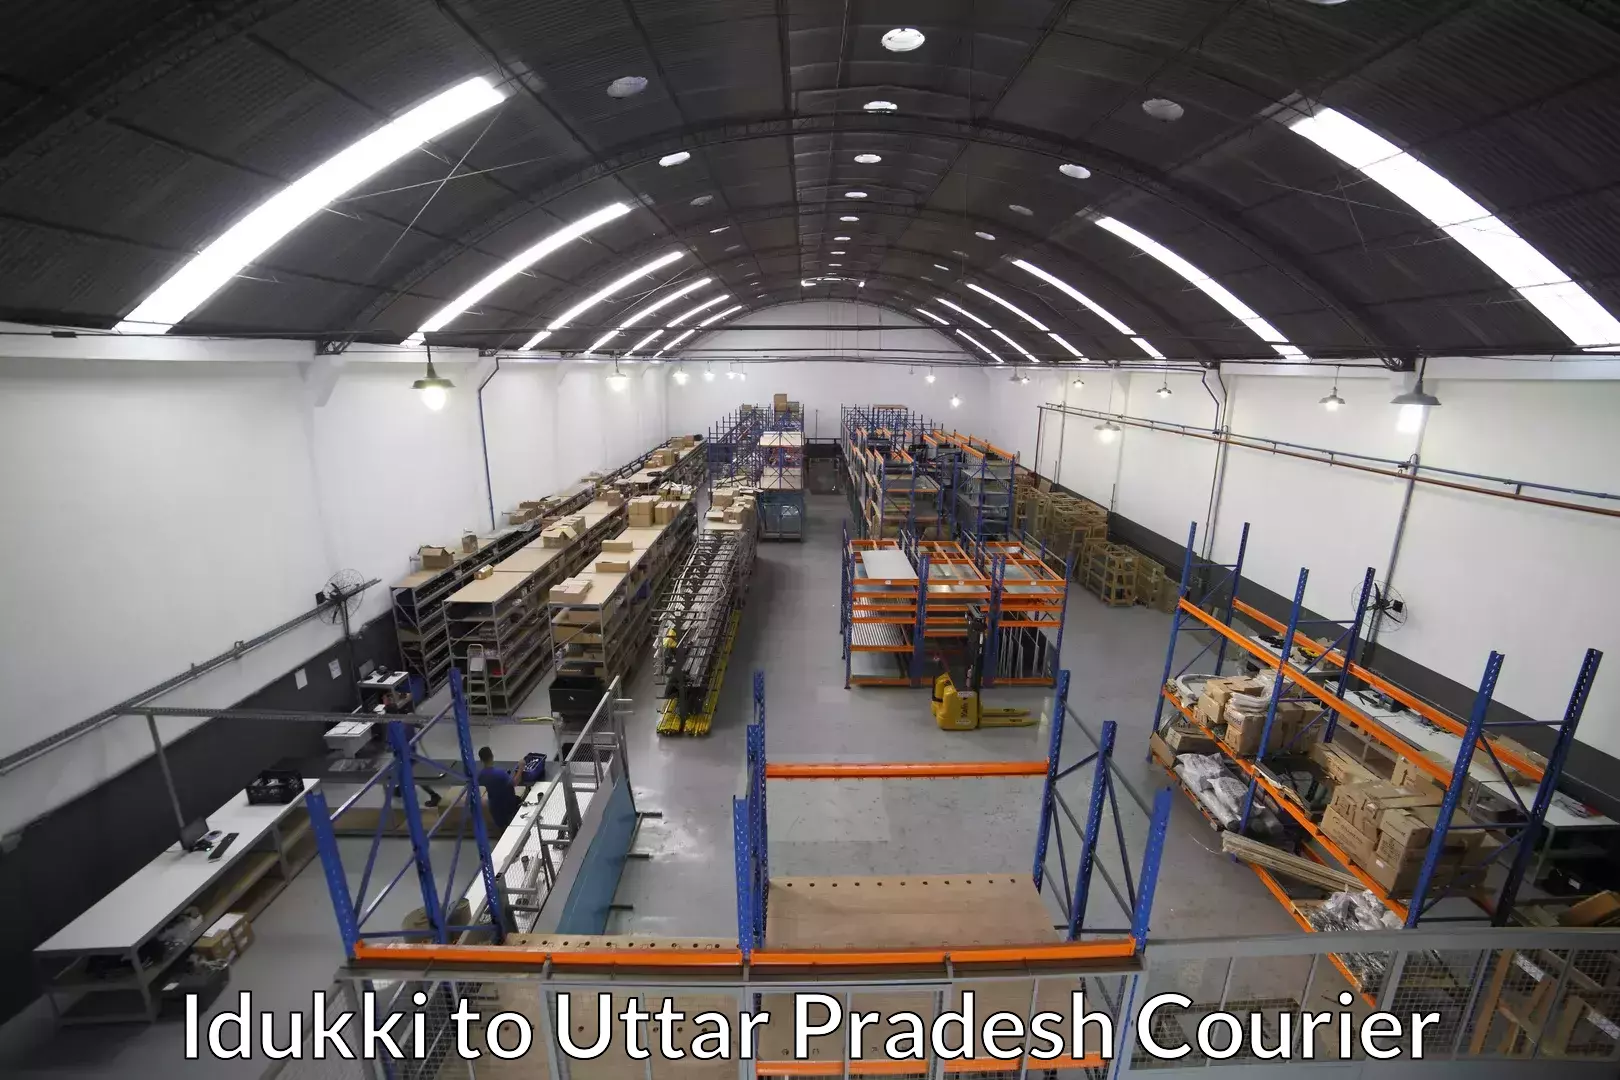 Efficient relocation services in Idukki to Uttar Pradesh